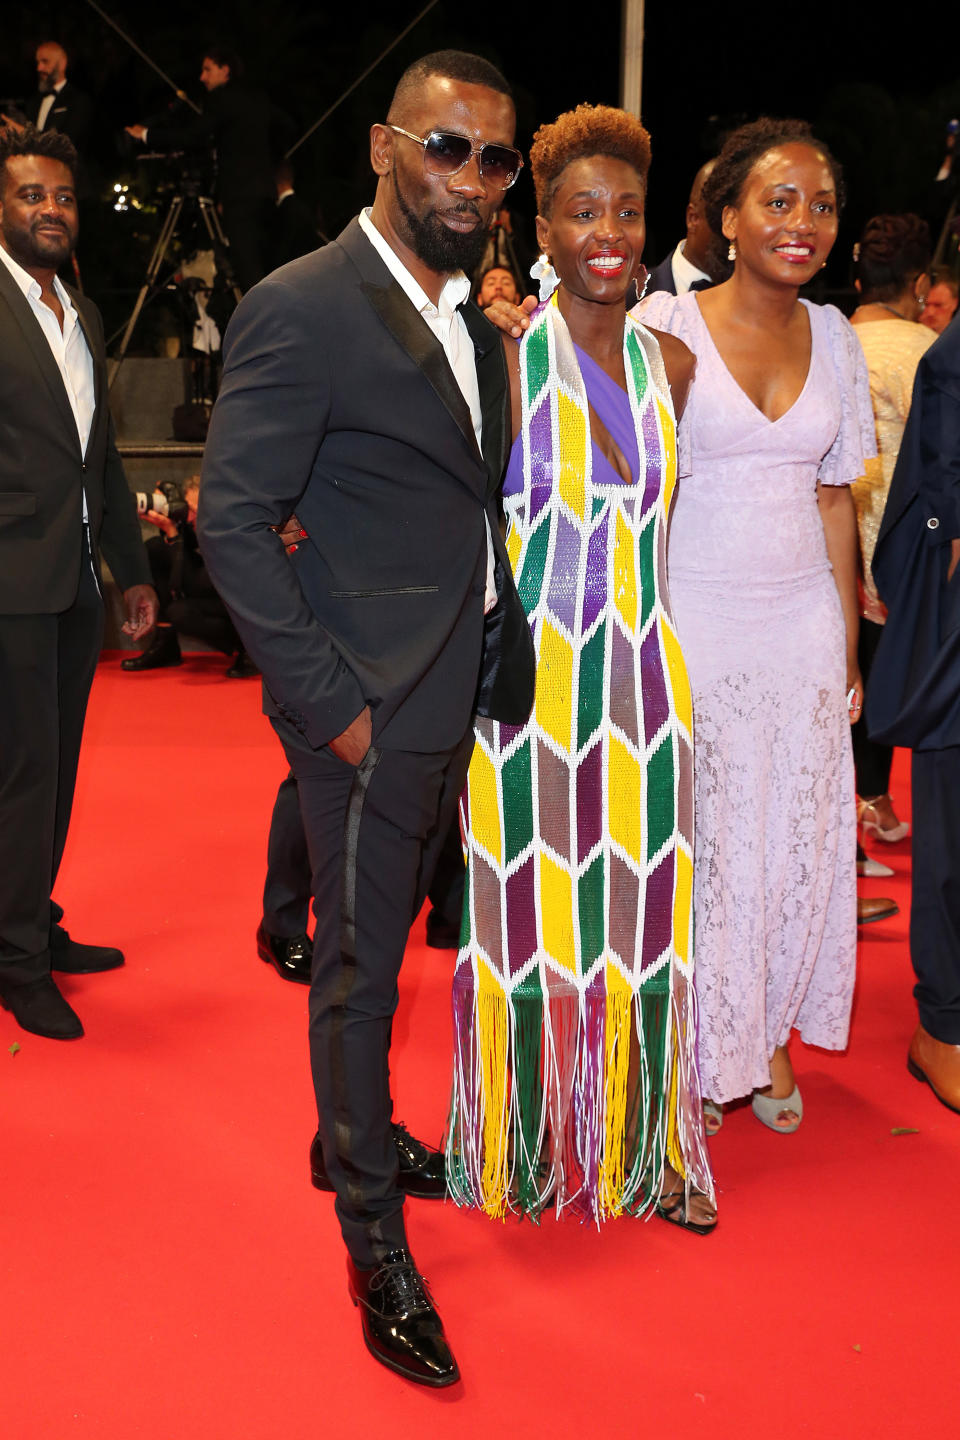 <p>La journaliste Rokhaya Diallo était de retour sur le tapis rouge dans une robe colorée, cette fois pour la projection du film "Nostalgia". Elle. ainsi pu prendre la pose au côté de l'artiste Passi. (Photo by Gisela Schober/Getty Images)</p> 